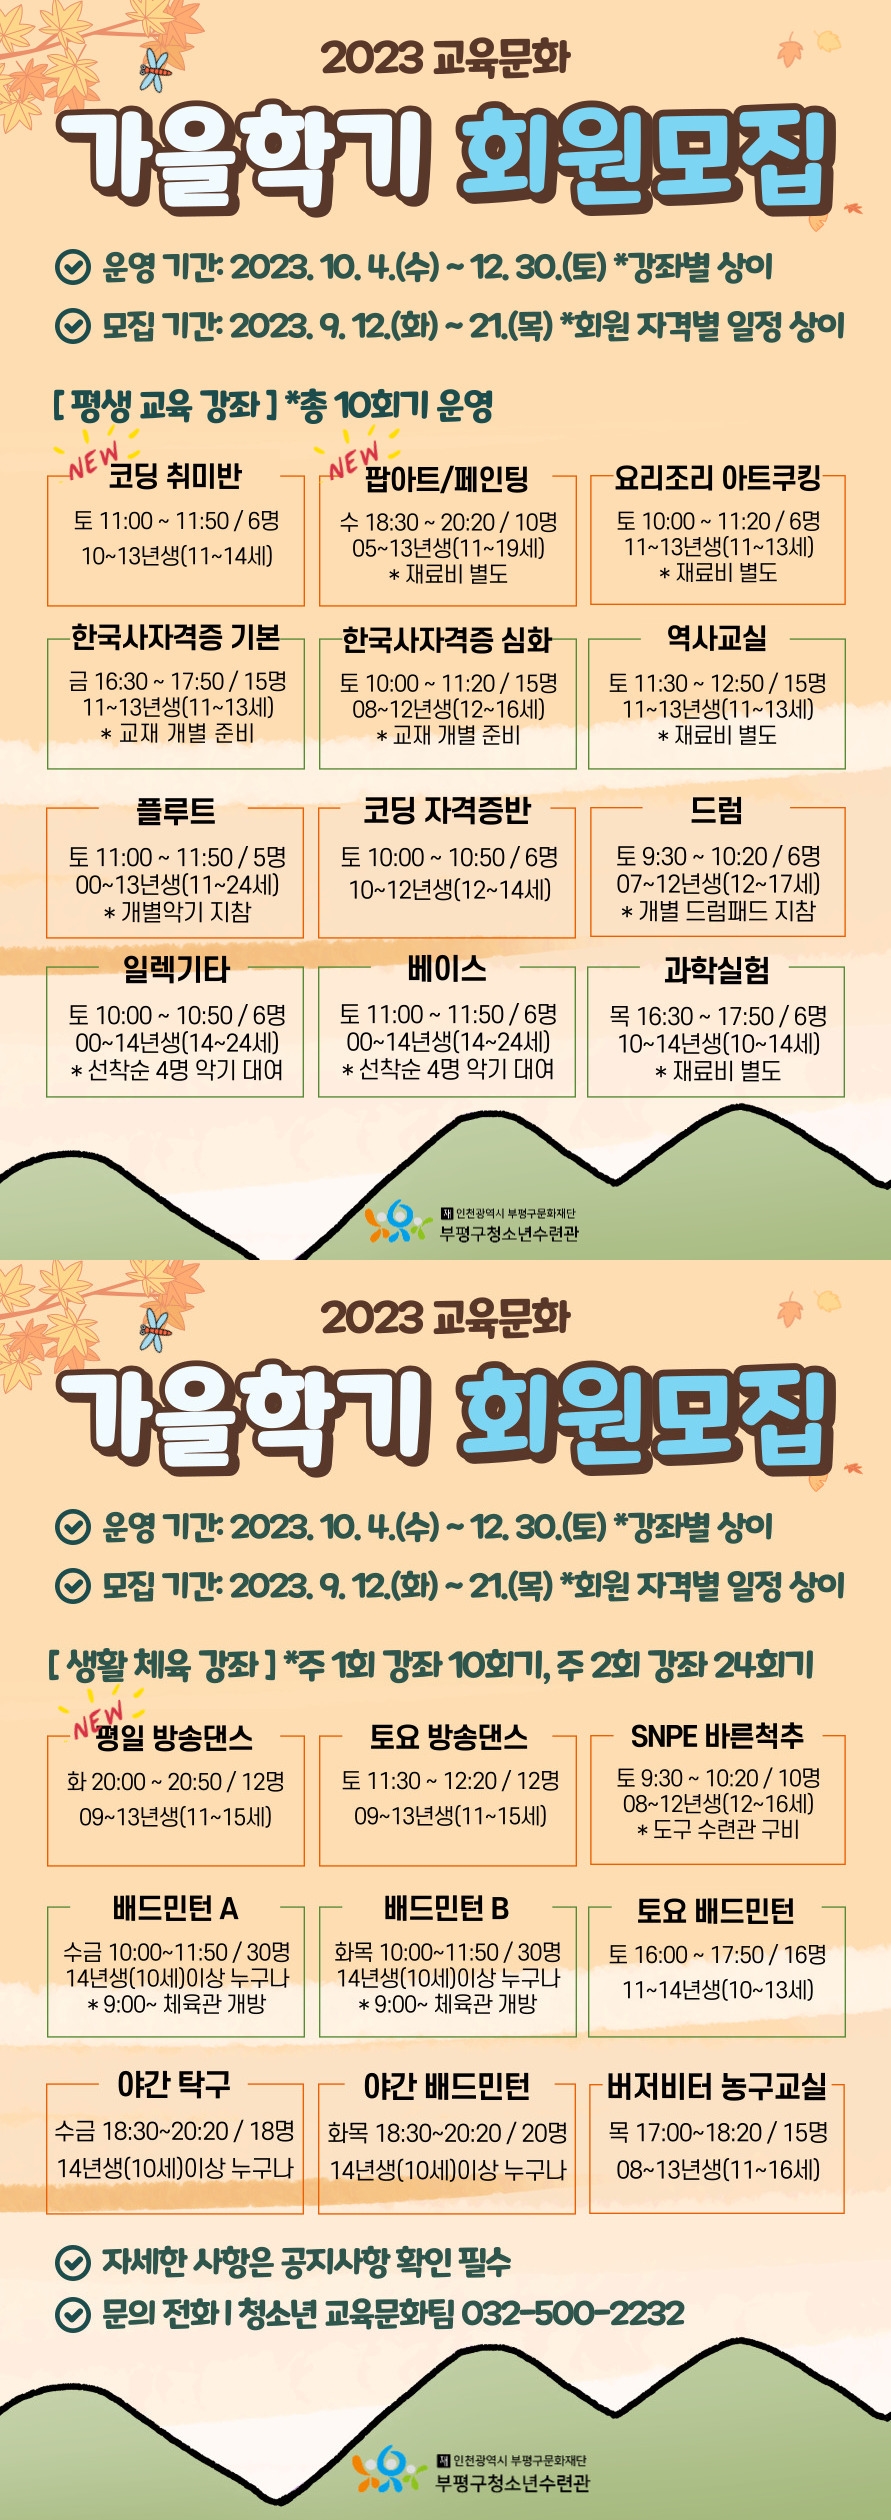 인천 부평구 청소년수련관, 2023 교육문화 가을학기 회원 모집